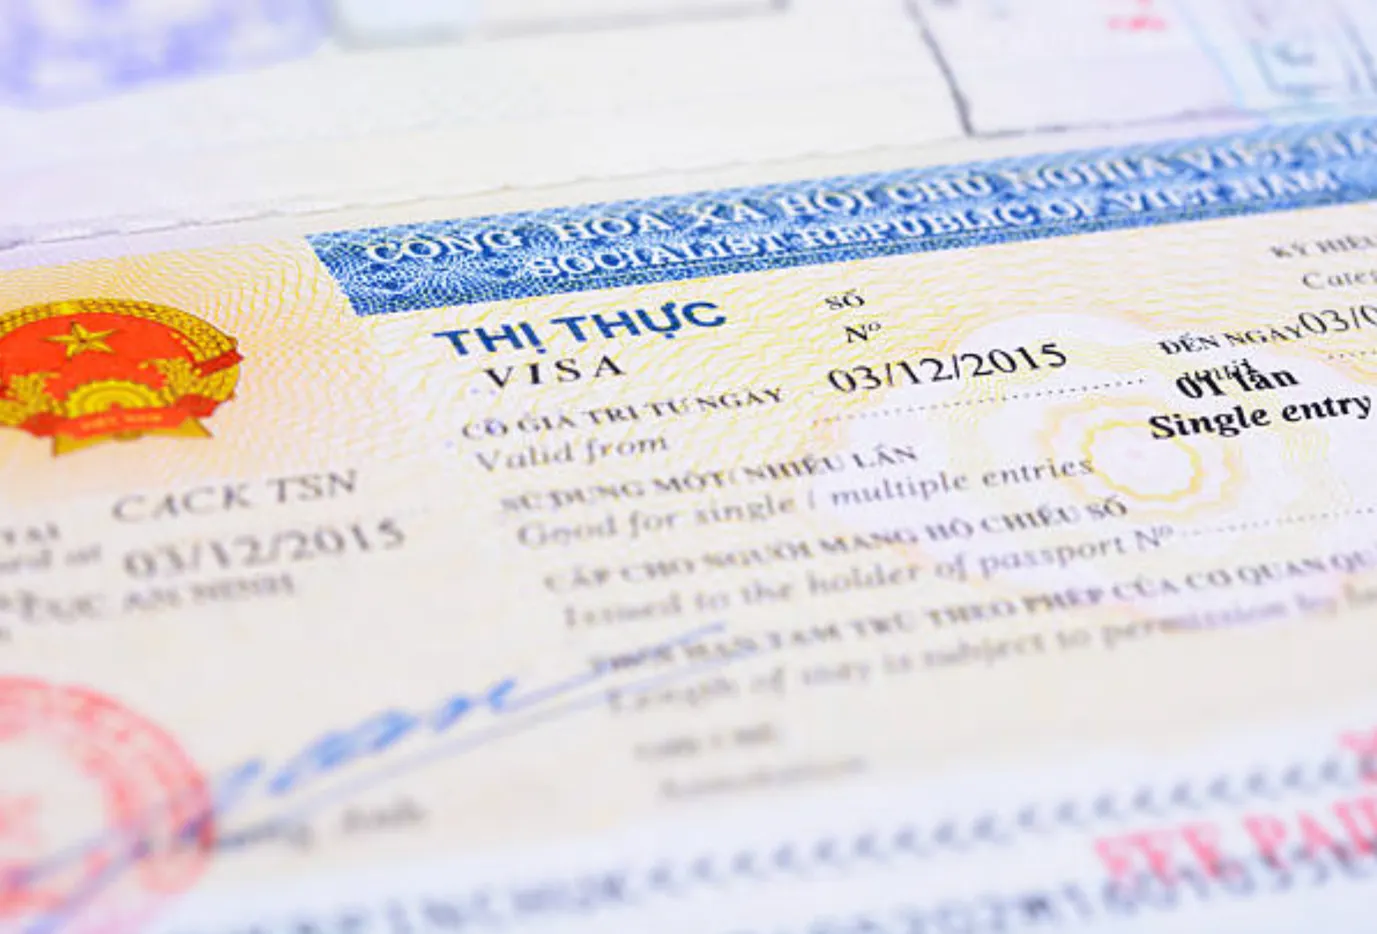 【越南簽證種類】越南簽證有哪些類型？ | Vietnam eVisa